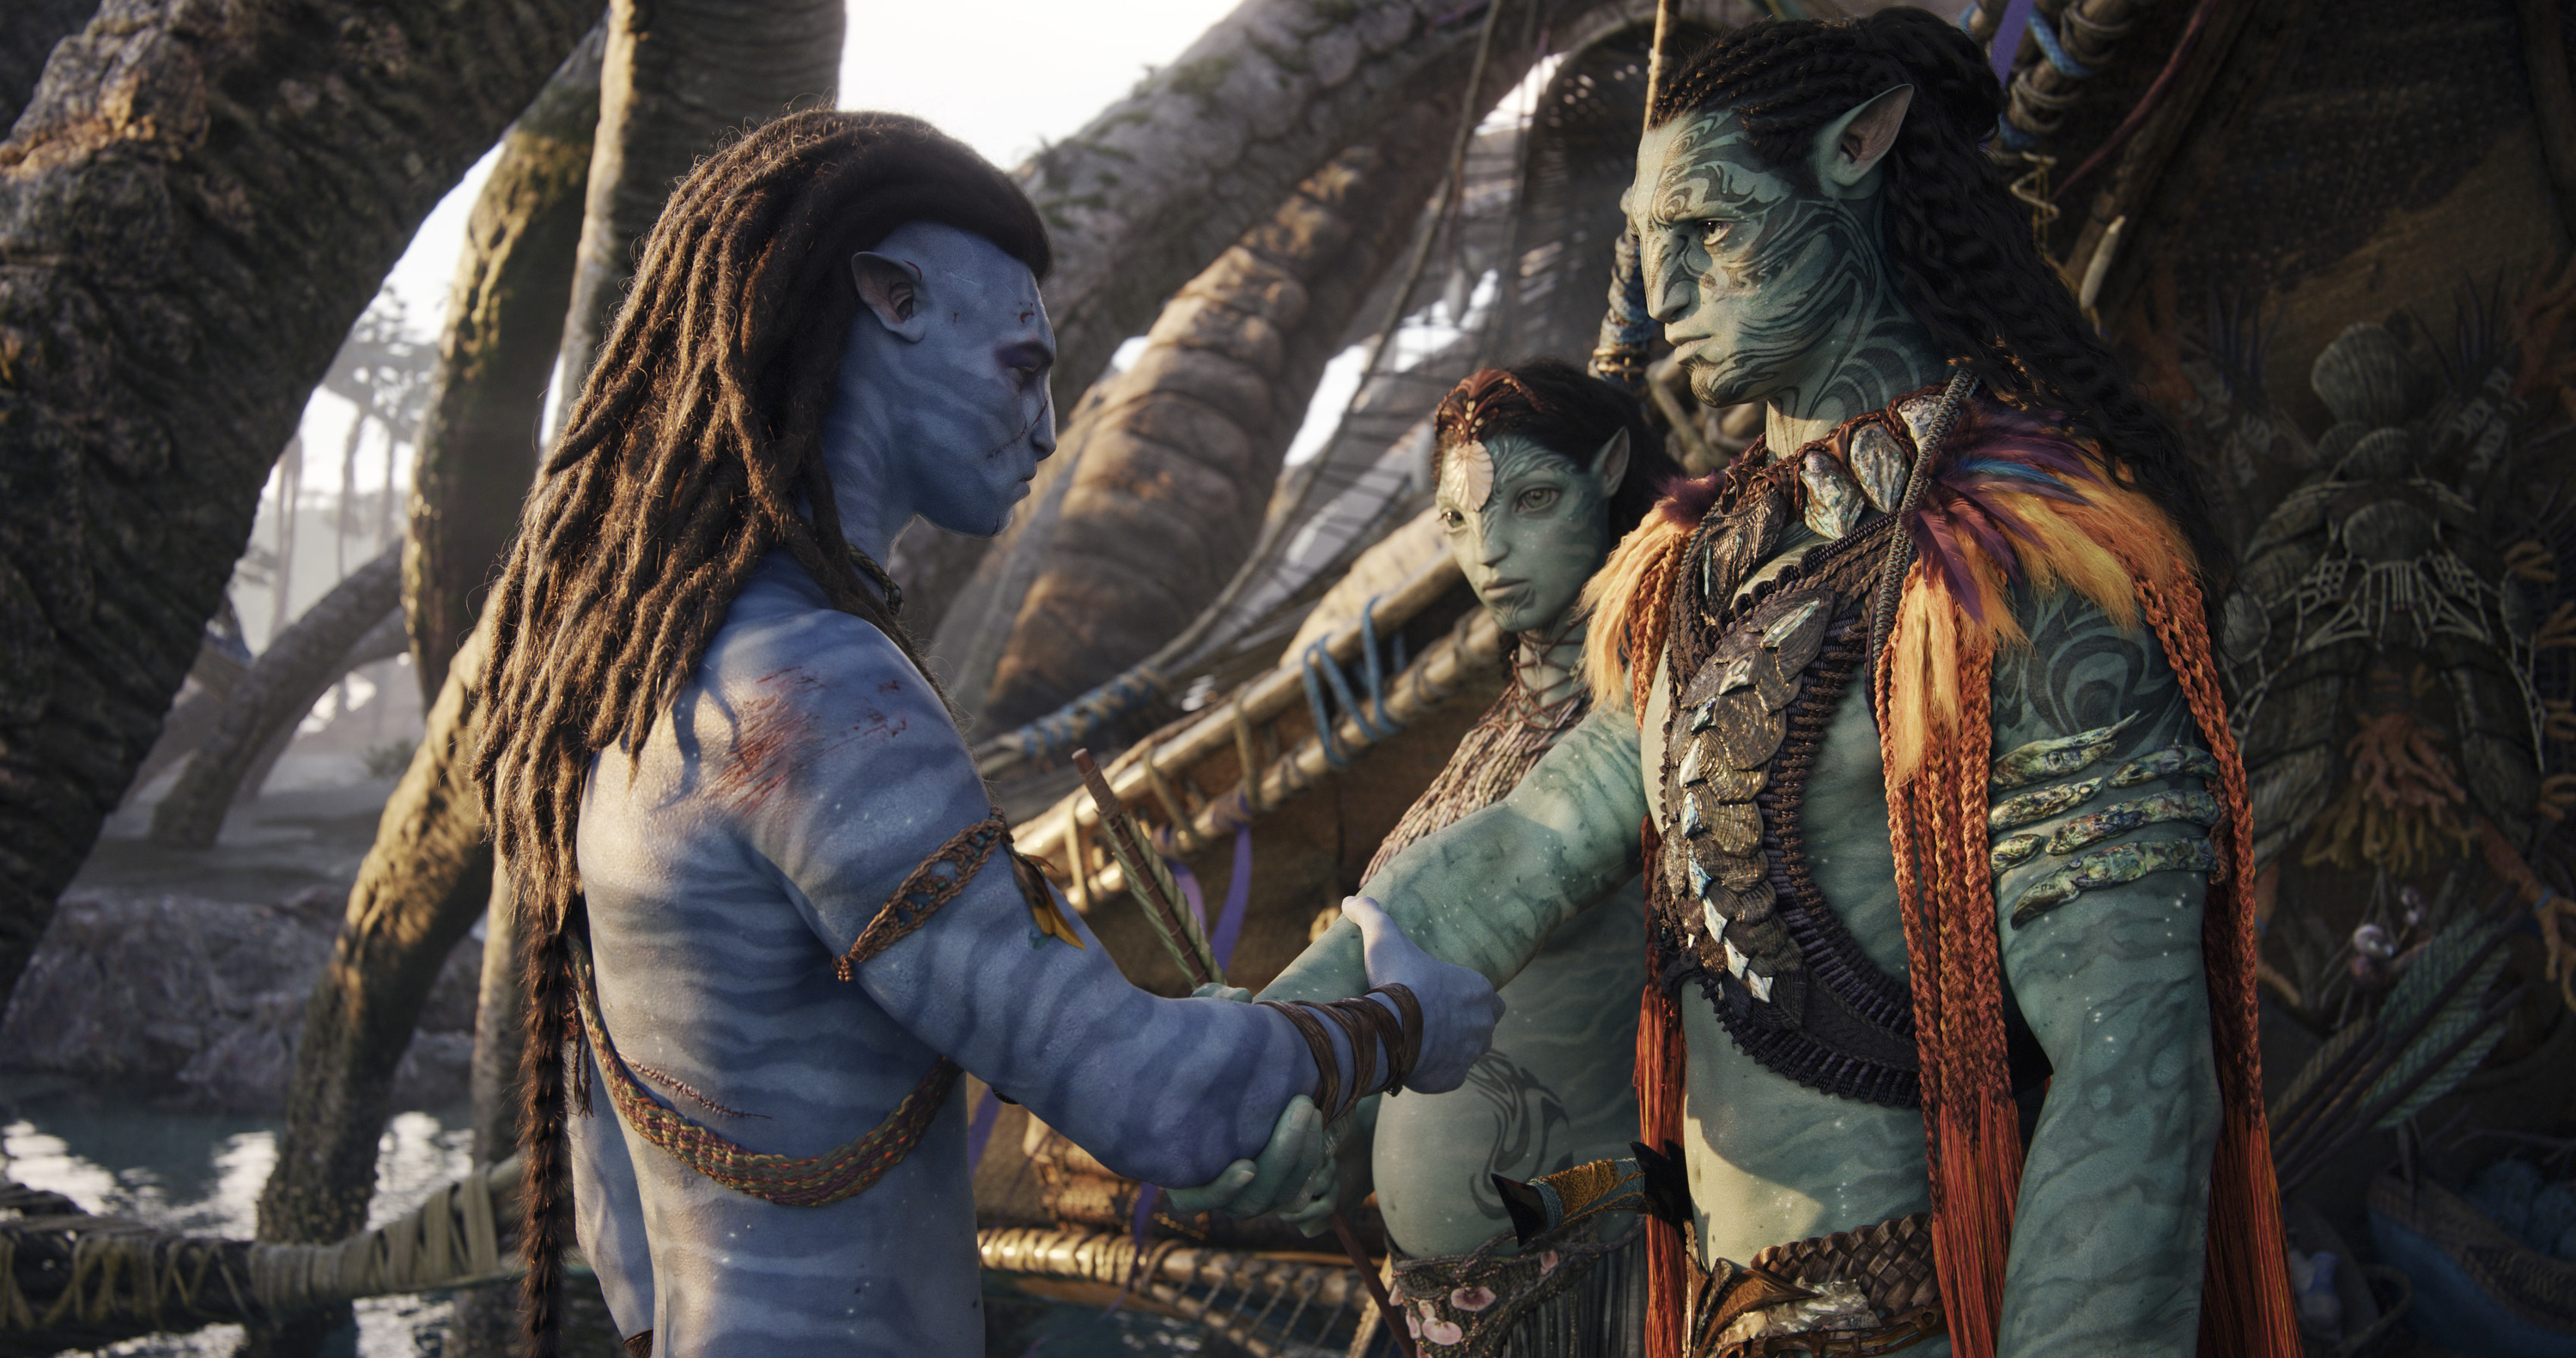 "Avatar: La via dell'acqua" ha incassato 850 milioni di dollari in 10 giorni al botteghino - entro Capodanno il box office raggiungerà 1 miliardo di dollari